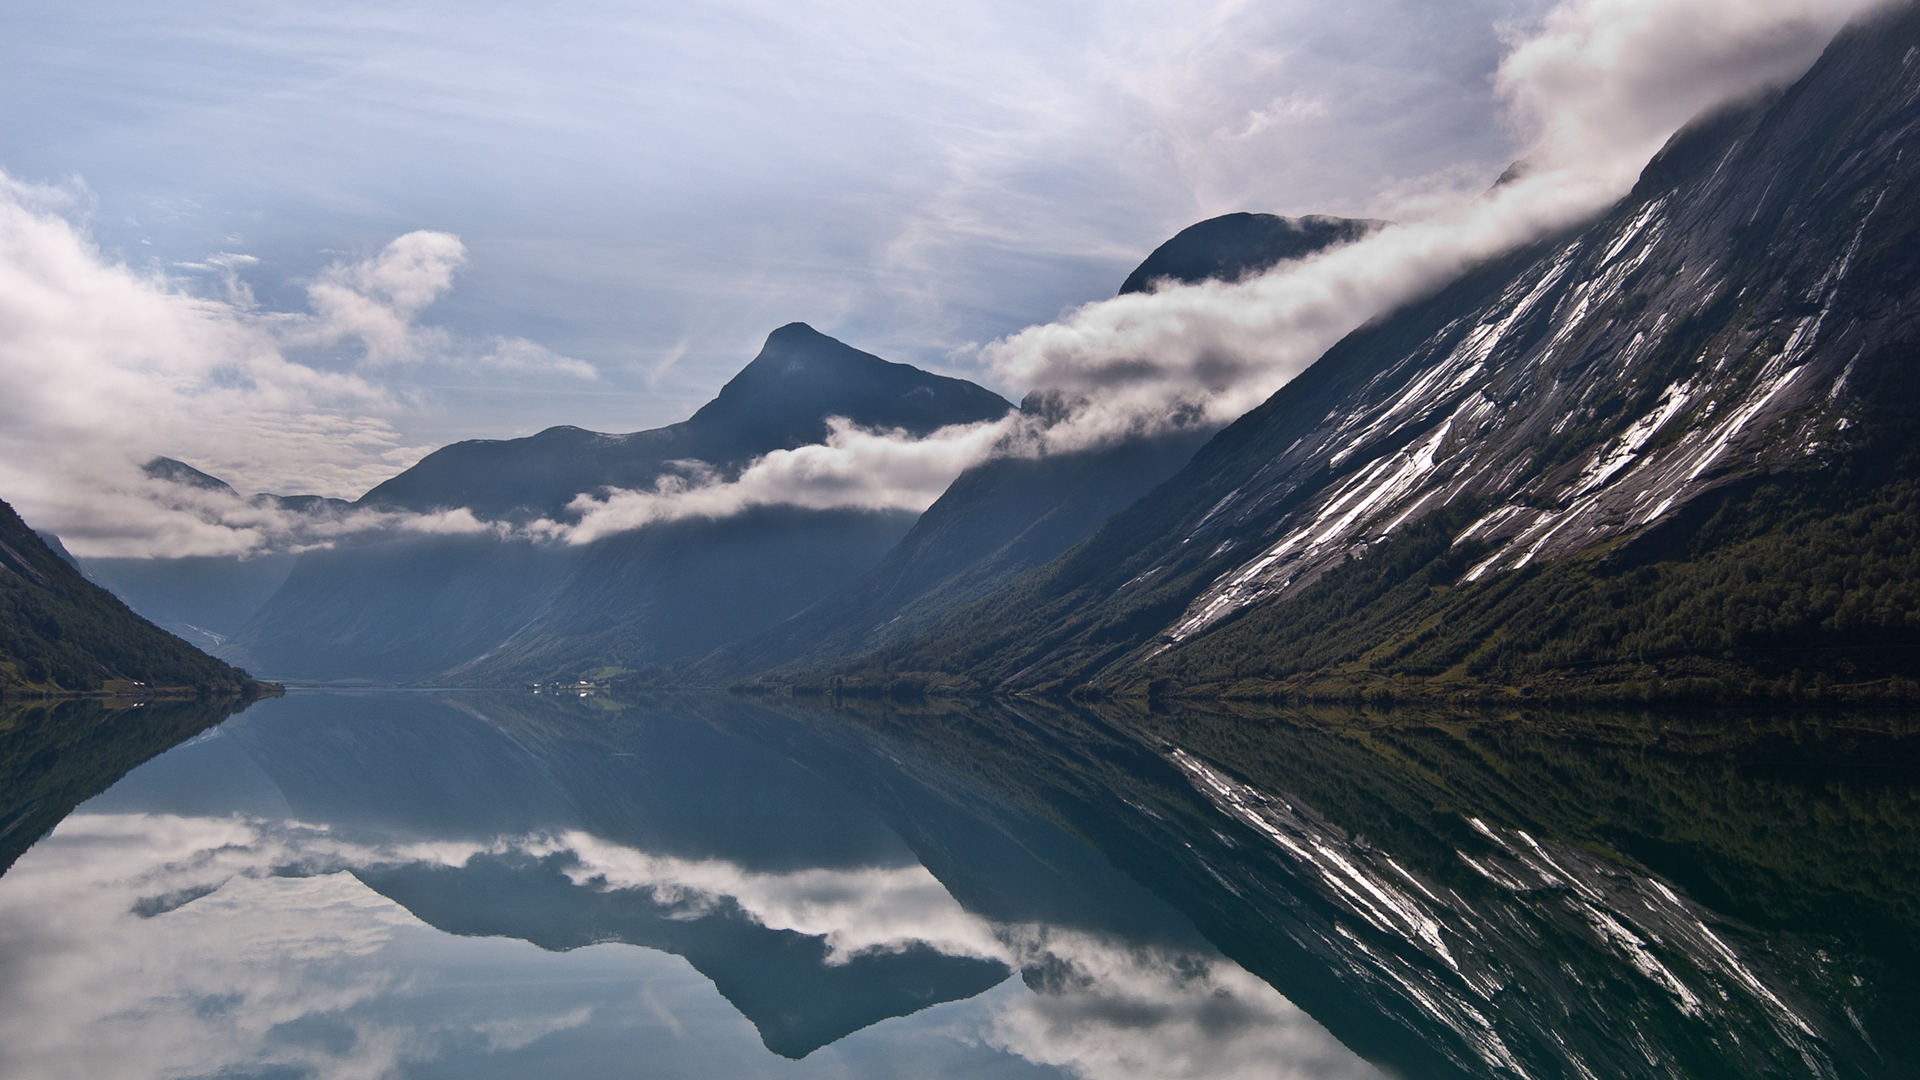 Озеро в Норвегии Фьорд